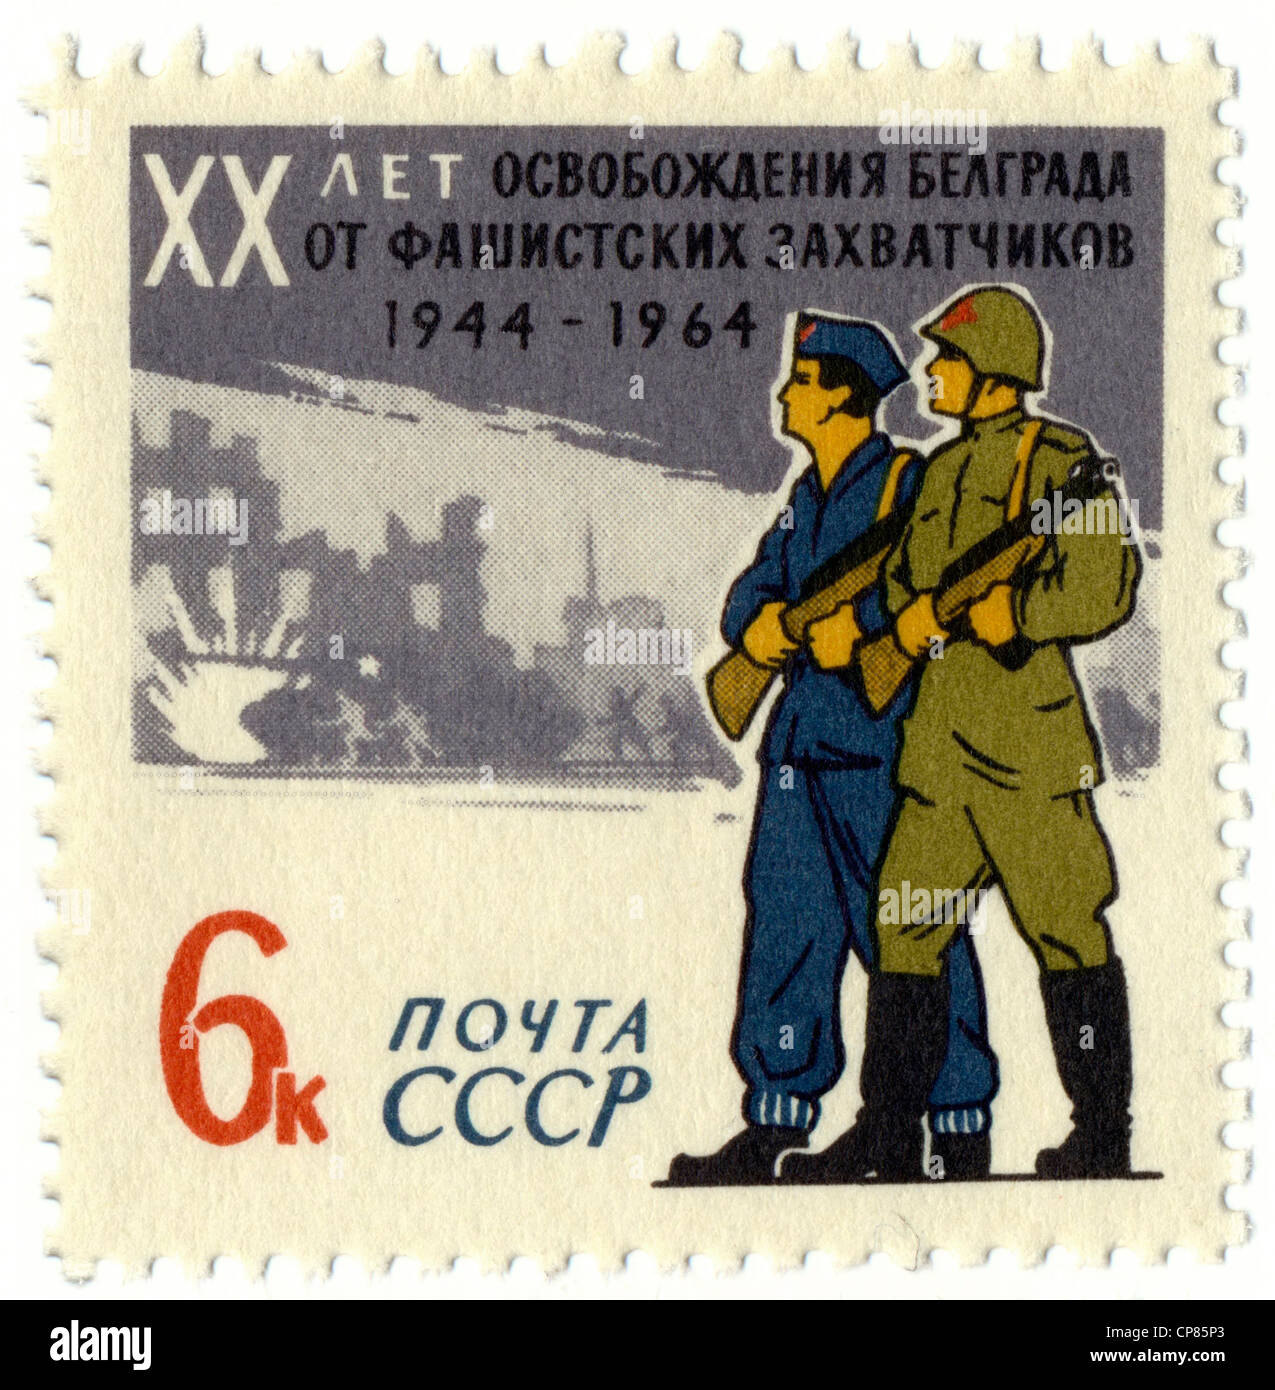 Centro storico di francobolli dell'URSS, motivi politici, ventesimo anniversario della liberazione della Jugoslavia, Belgrado dal Nazi Foto Stock